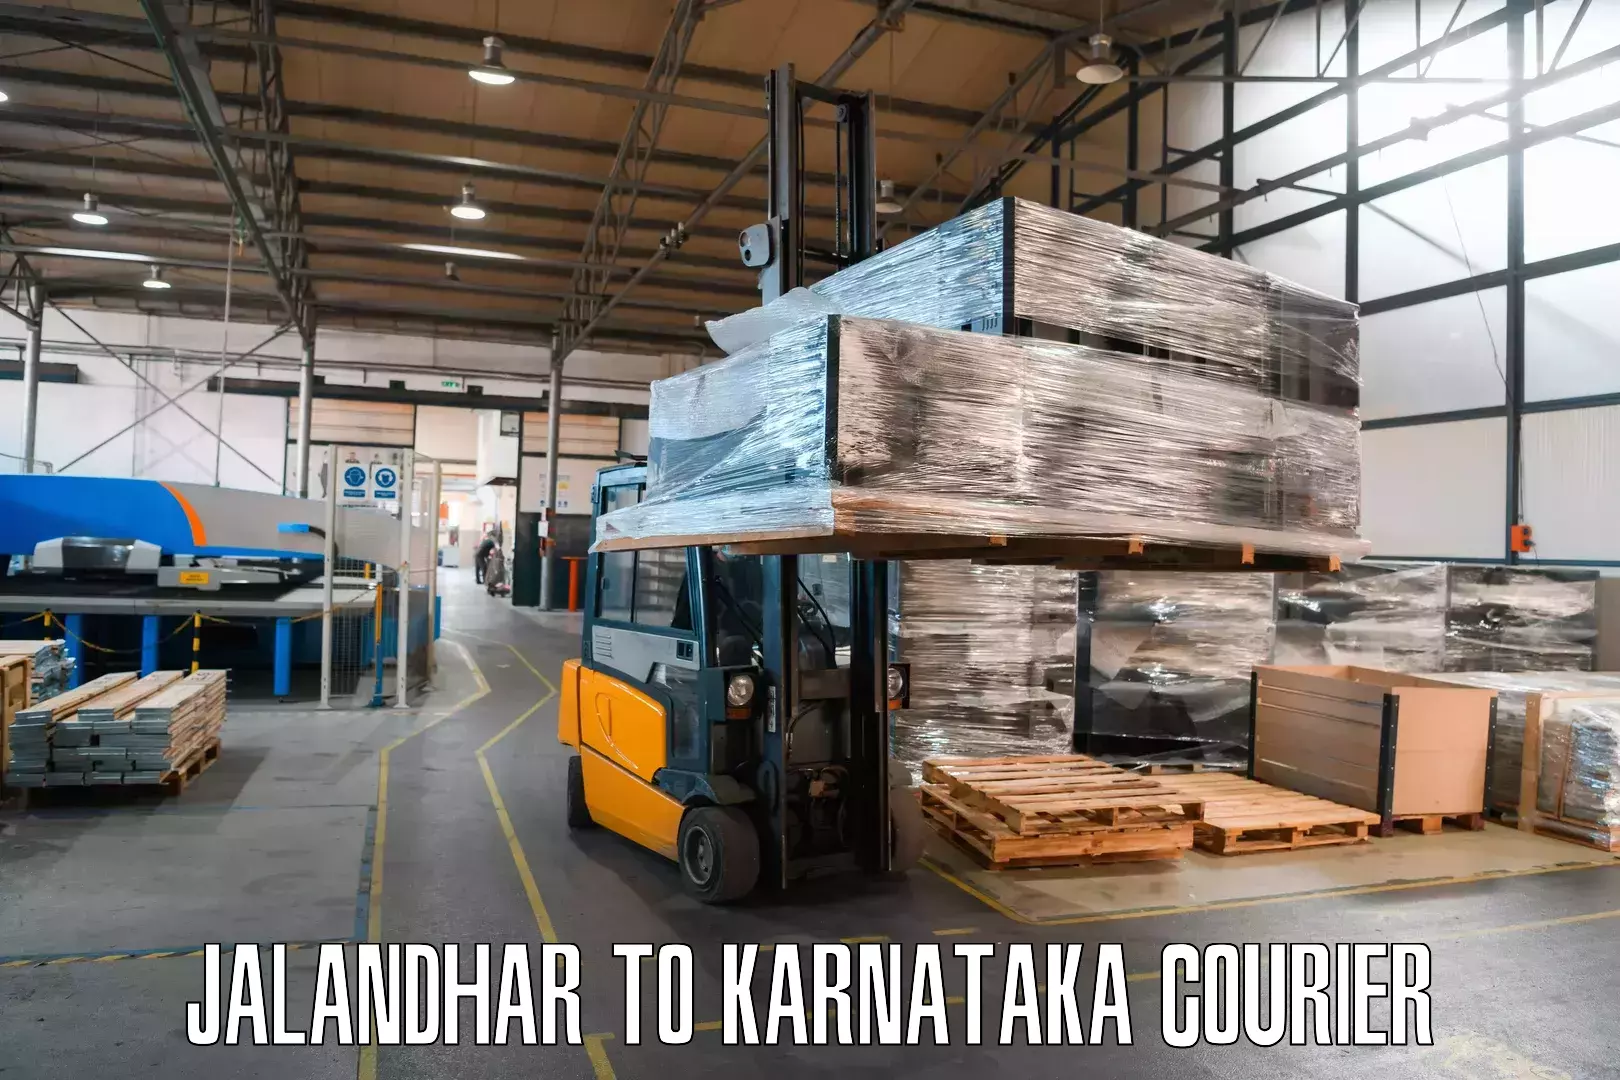 End-to-end delivery Jalandhar to Kanjarakatte